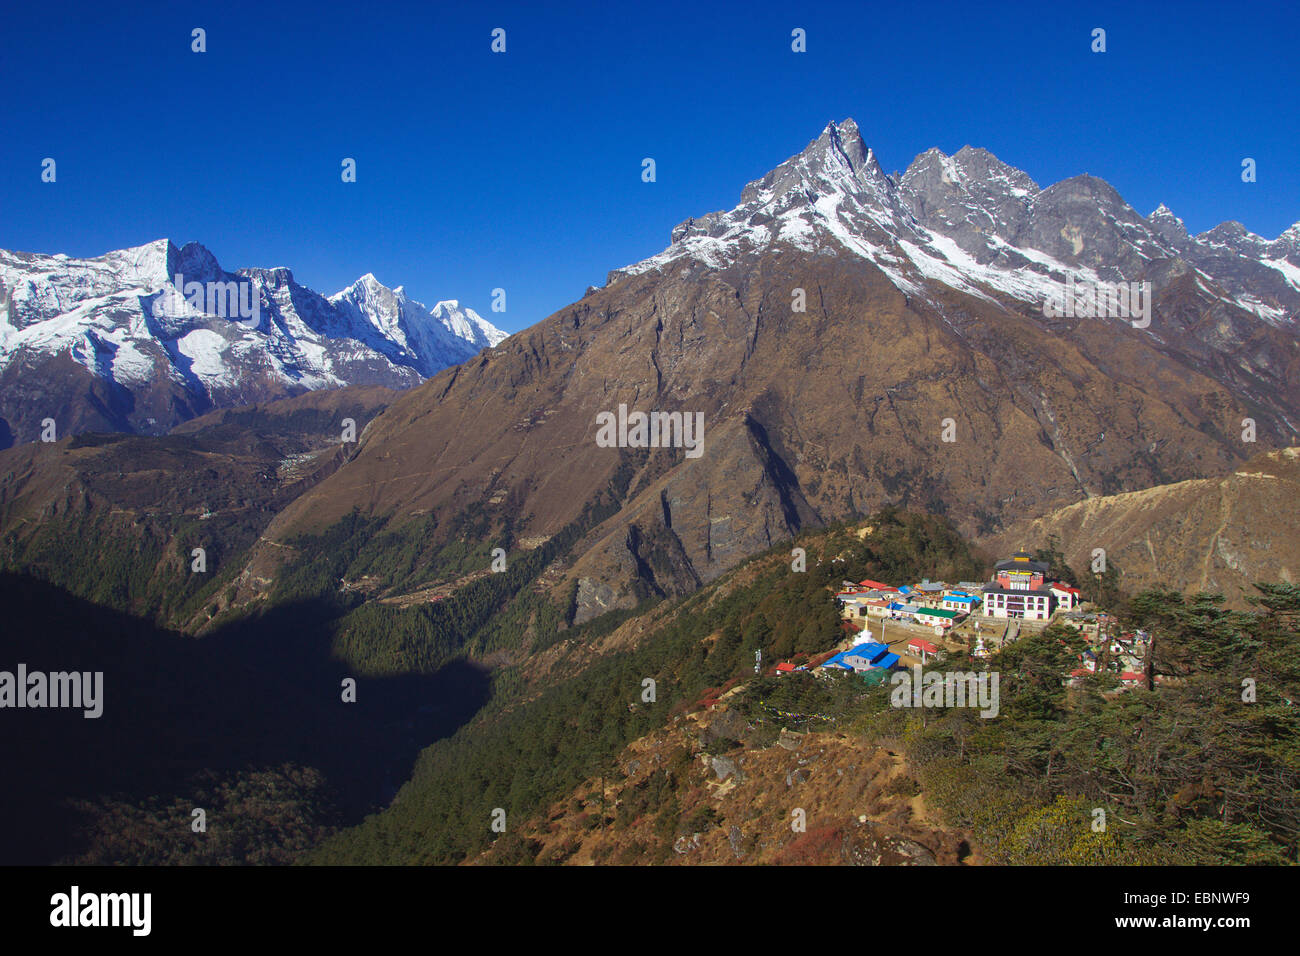 Tengboche Monastery in mountain scenery, Nepal, Himalaya, Khumbu Himal Stock Photo